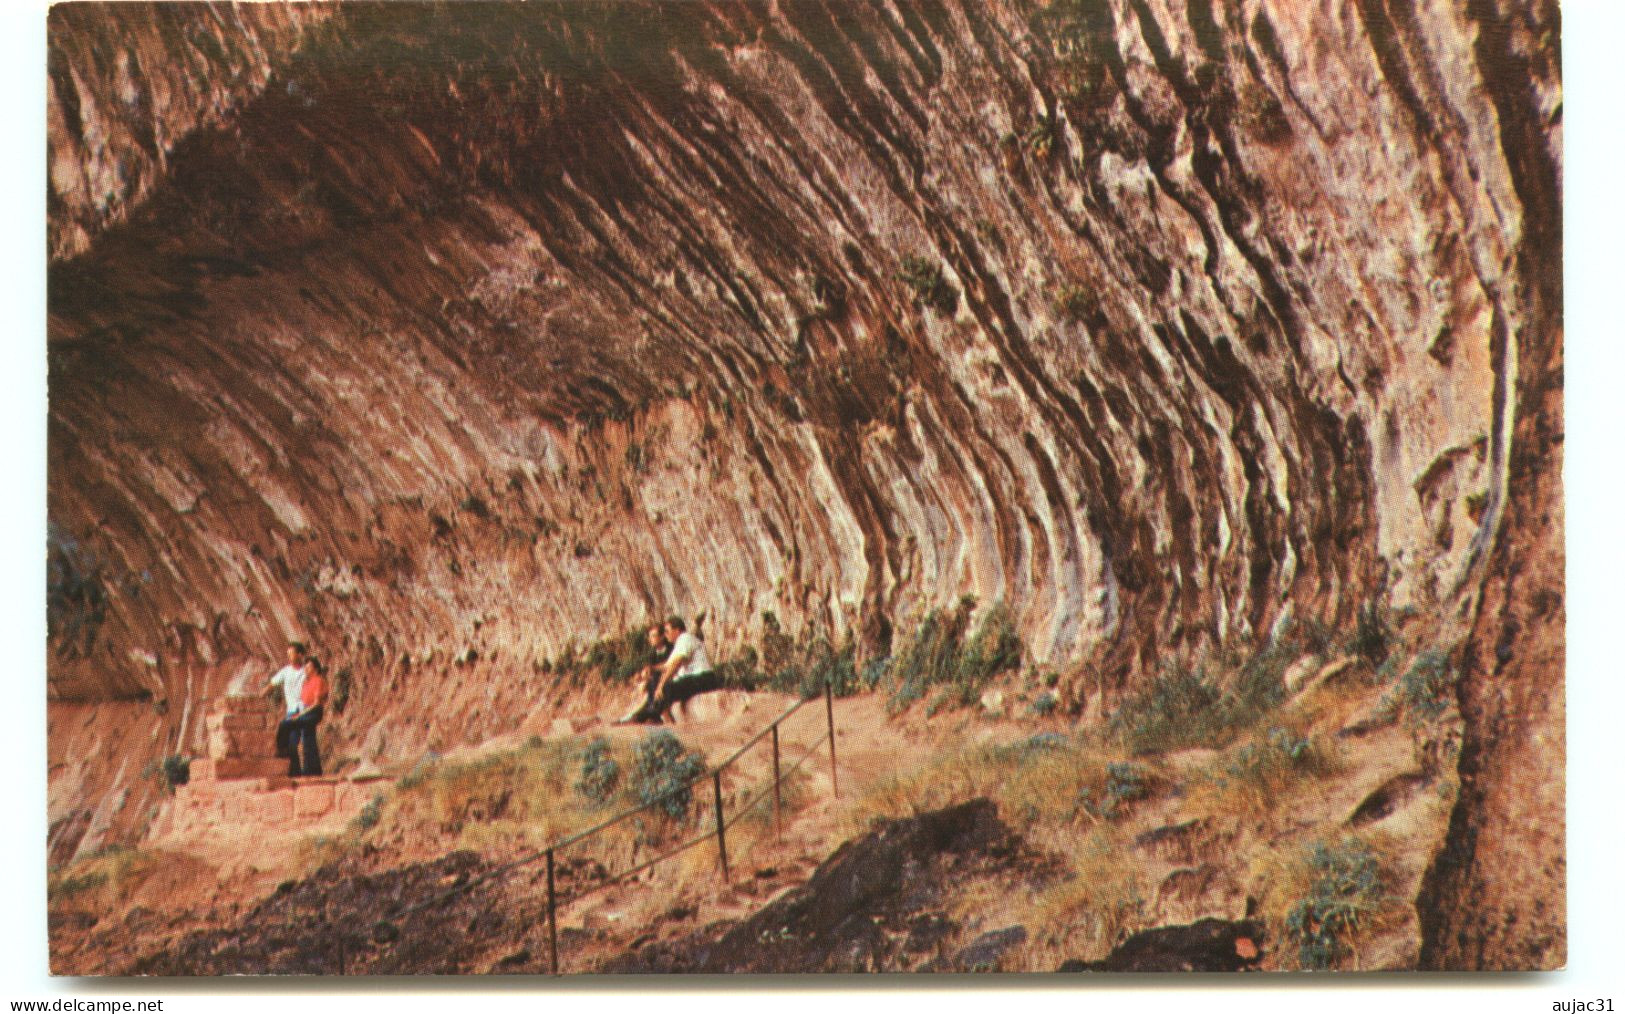 Etats-Unis - Utah - Zion National Park - Weeping Rock - Bon état - Zion